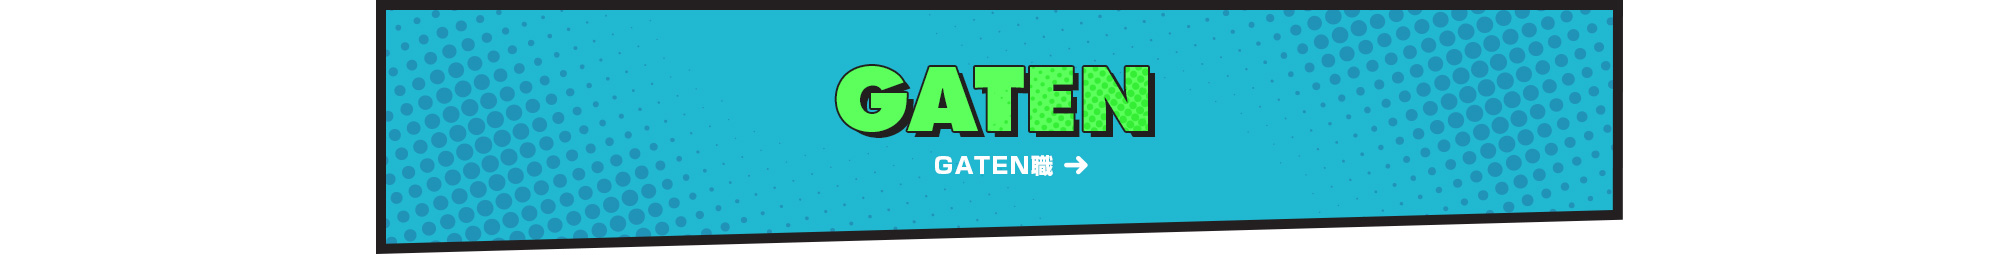 gaten_bnr_off